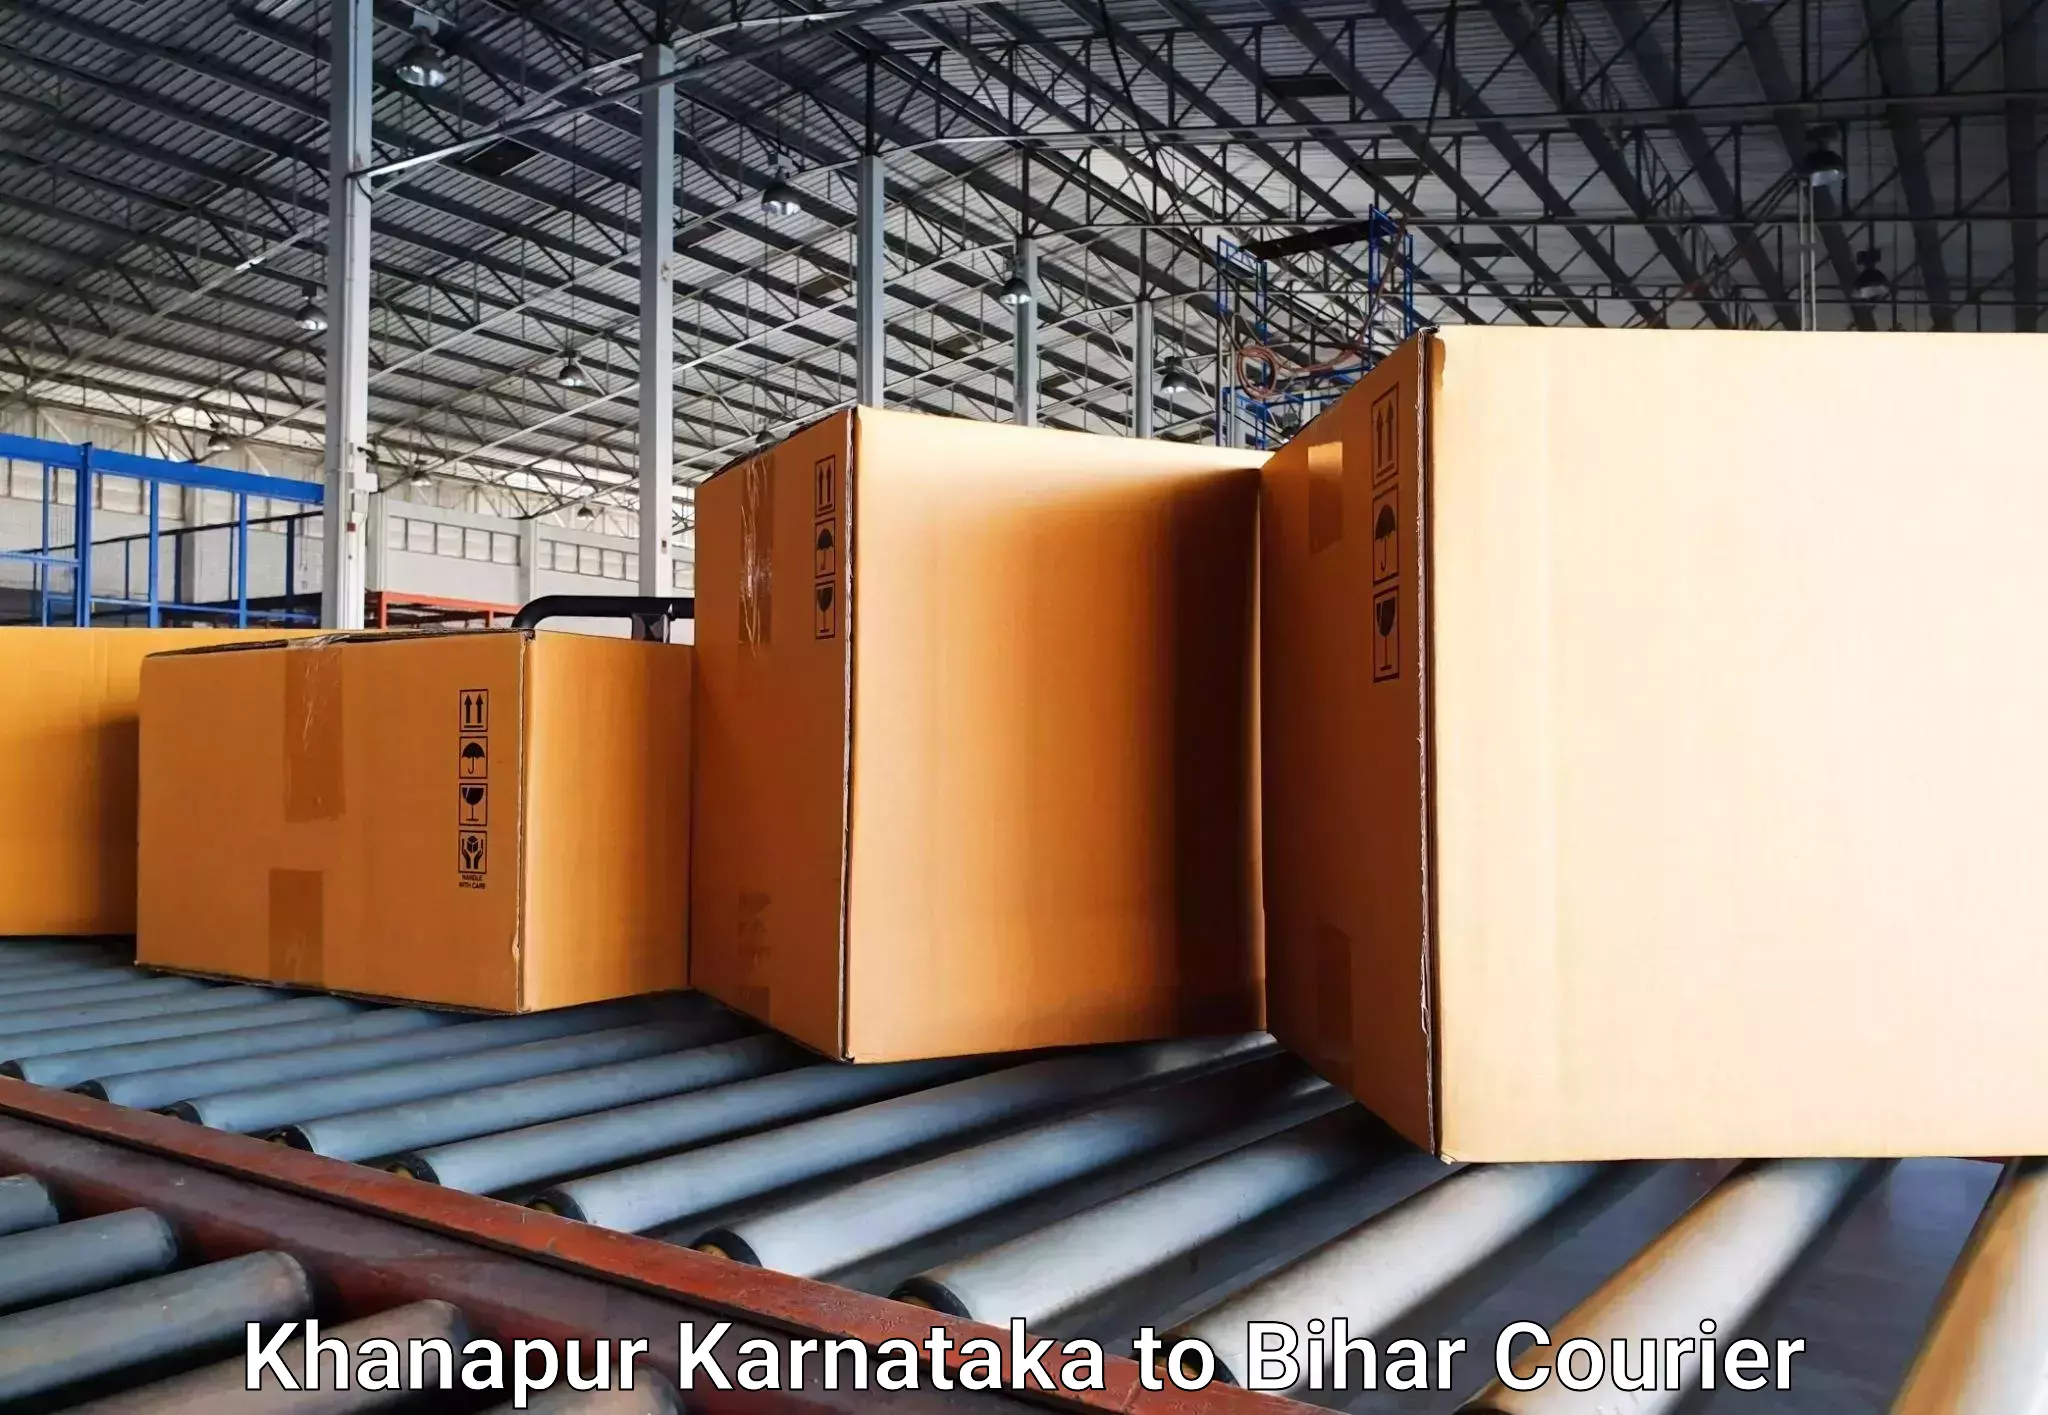 Luggage delivery network Khanapur Karnataka to Maheshkhunt